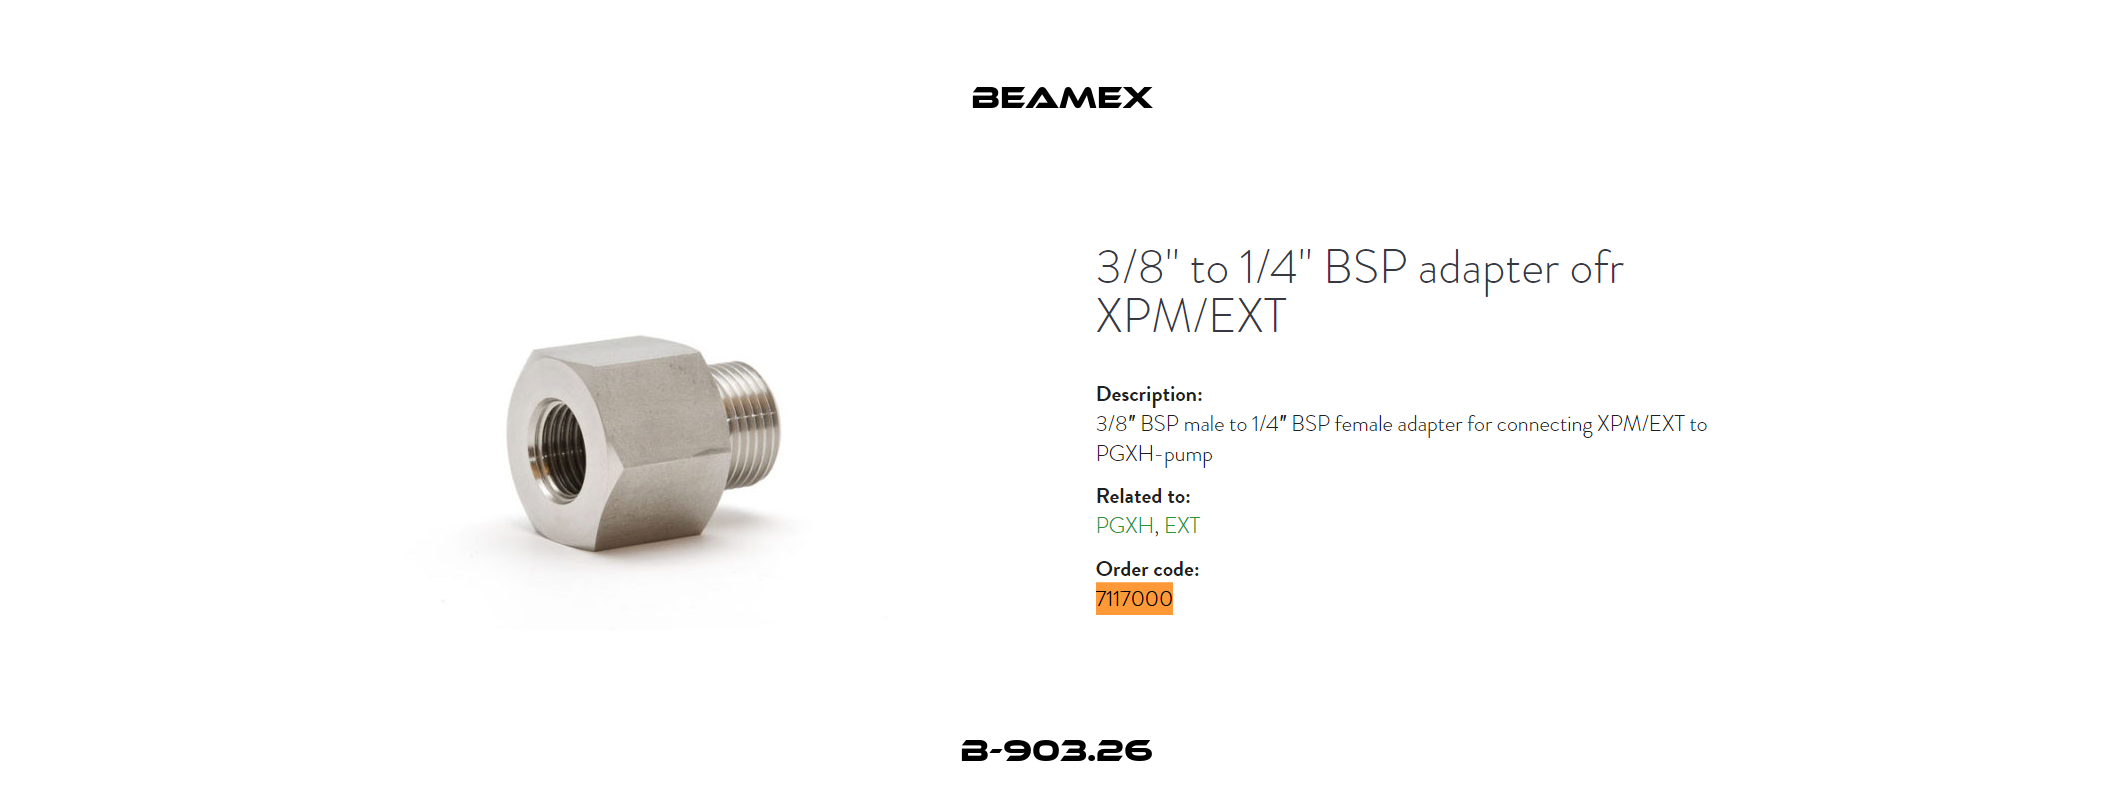 B-903.26  Beamex